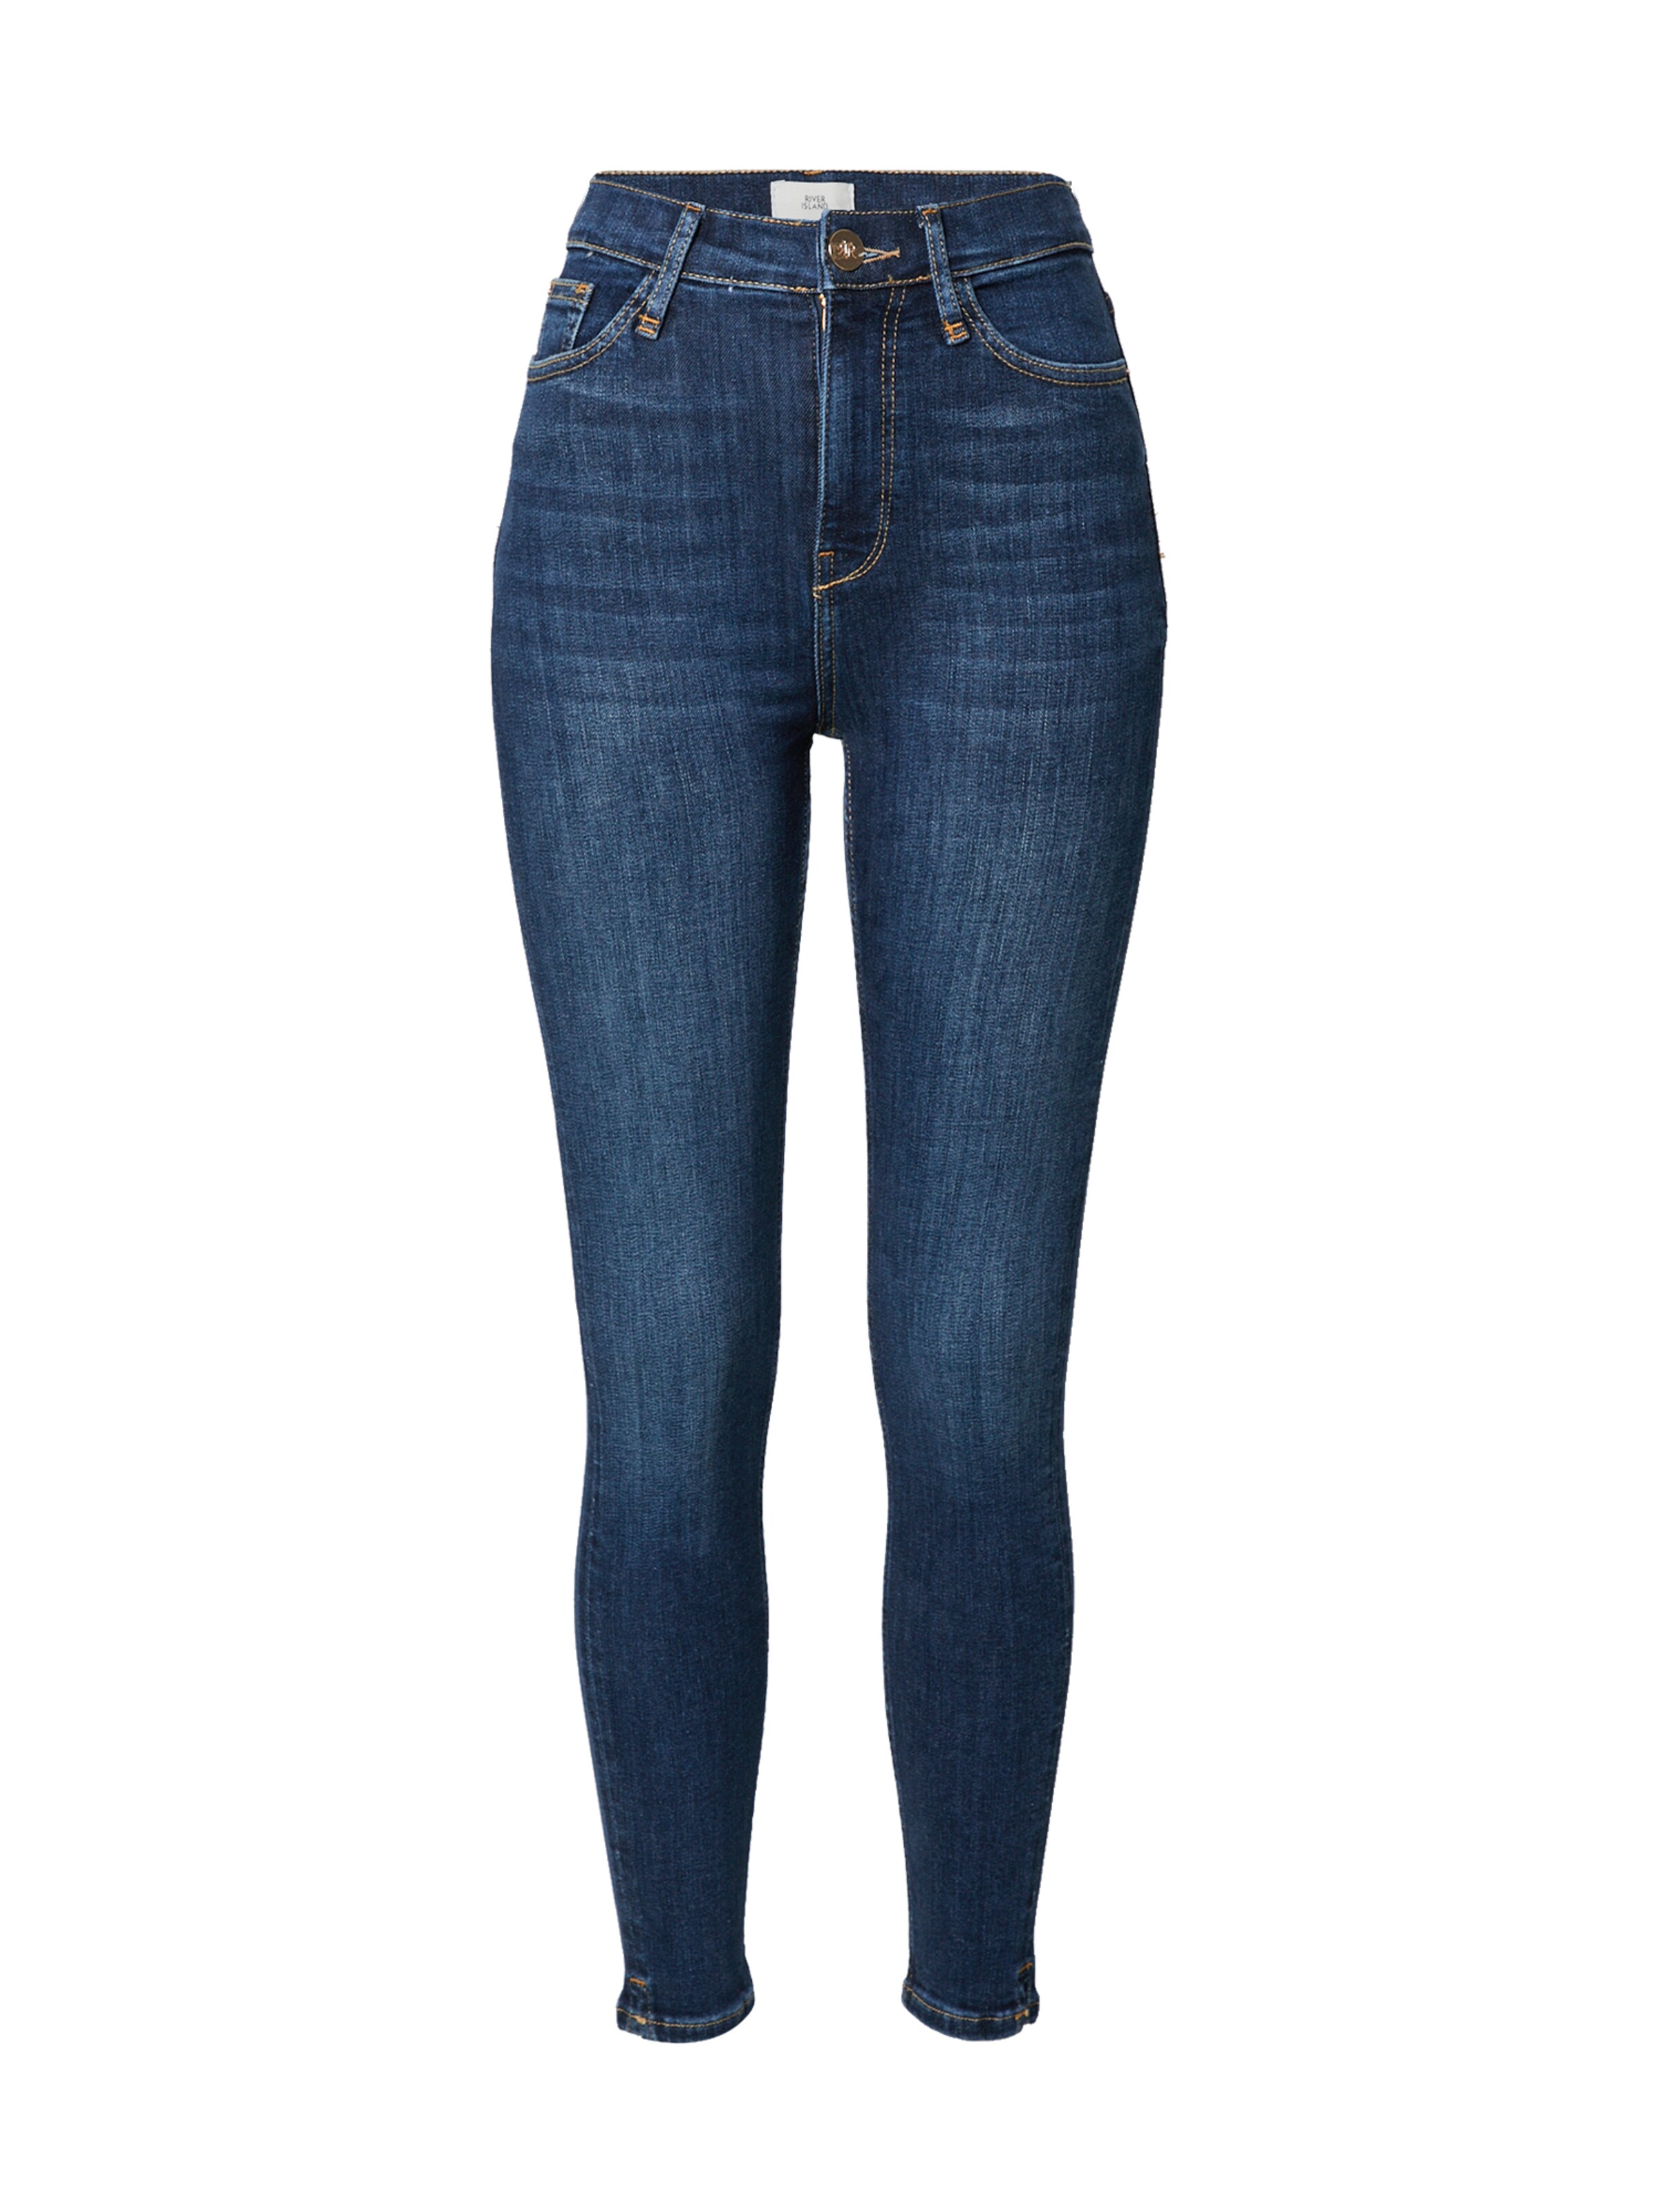 Abbigliamento Donna River Island Jeans DARK CRANE in Blu 